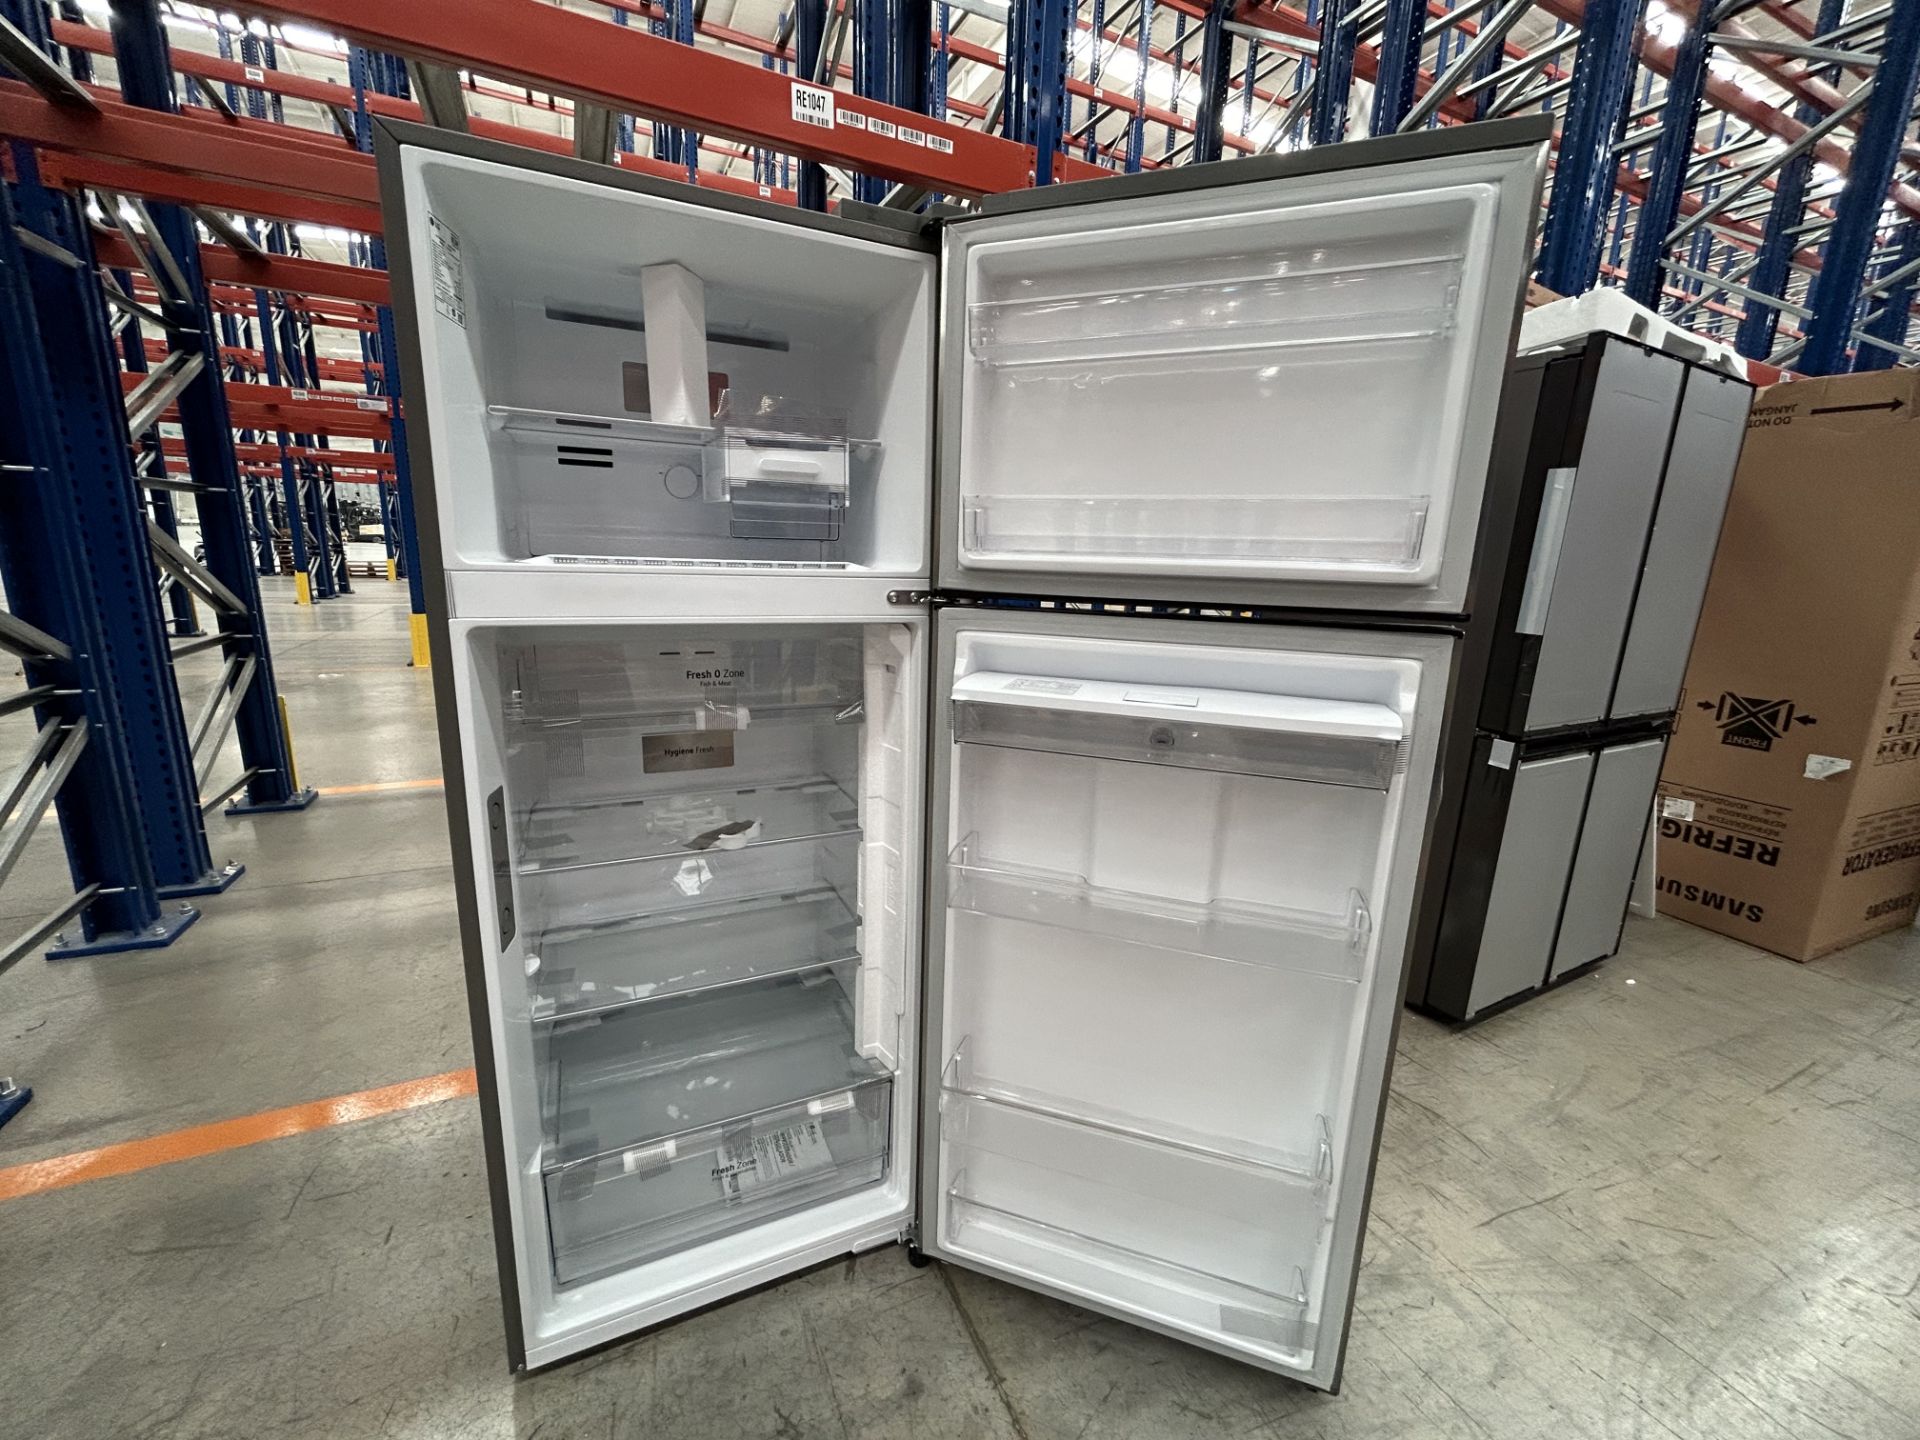 (NUEVO) Lote de 1 Refrigerador con dispensador de agua Marca LG Modelo VT40SWP, Serie 0T278, Color - Image 4 of 5